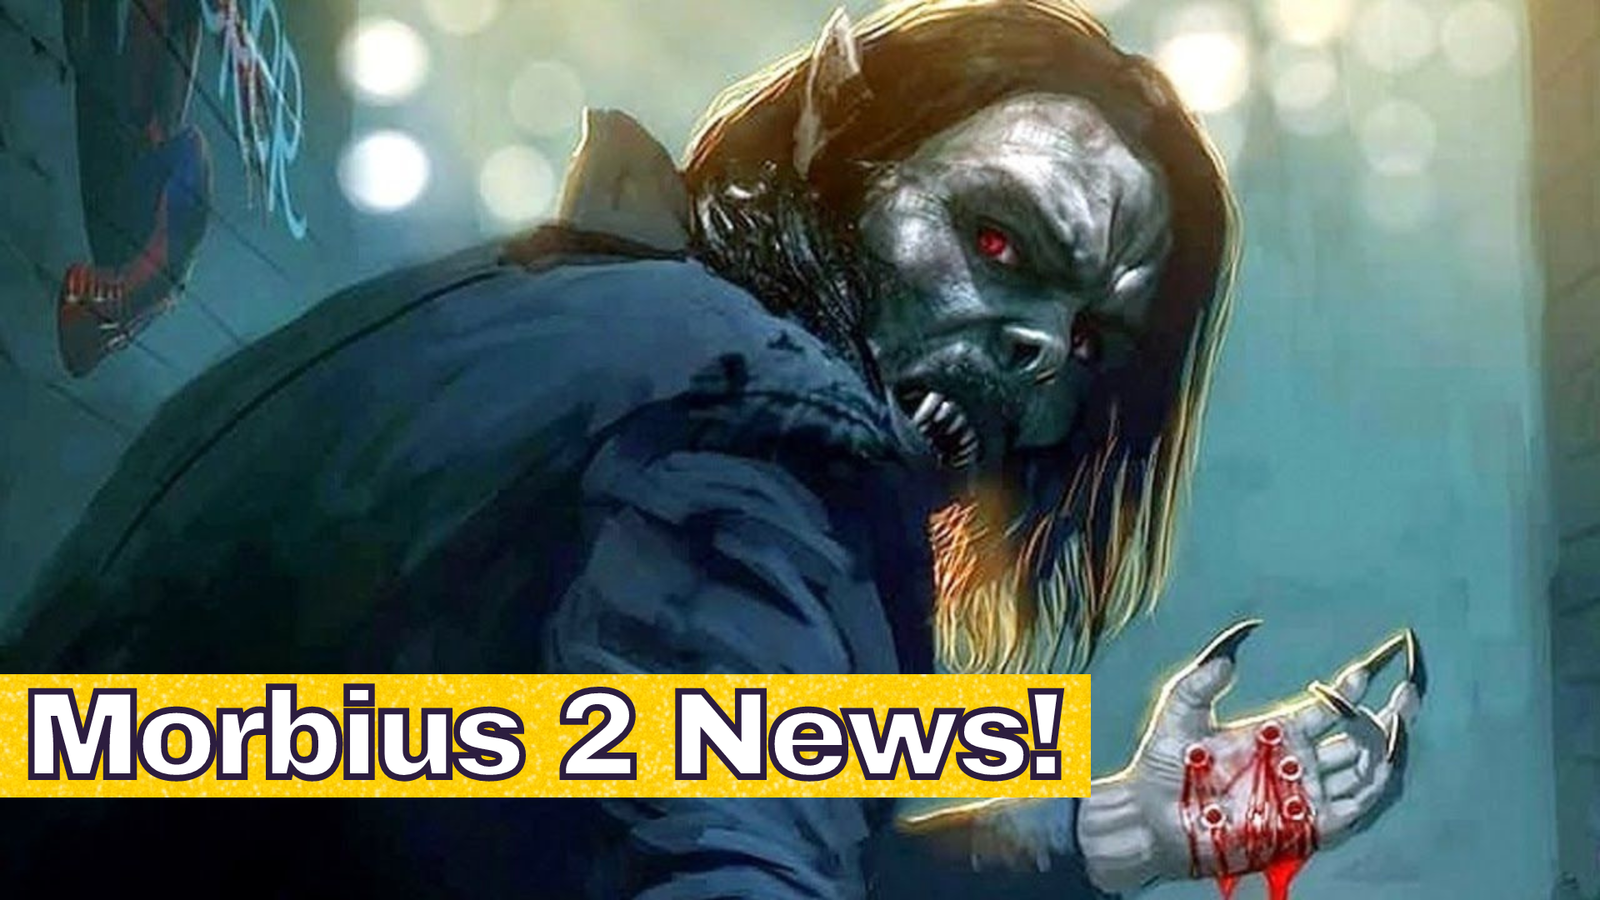 Morbius 2 News!